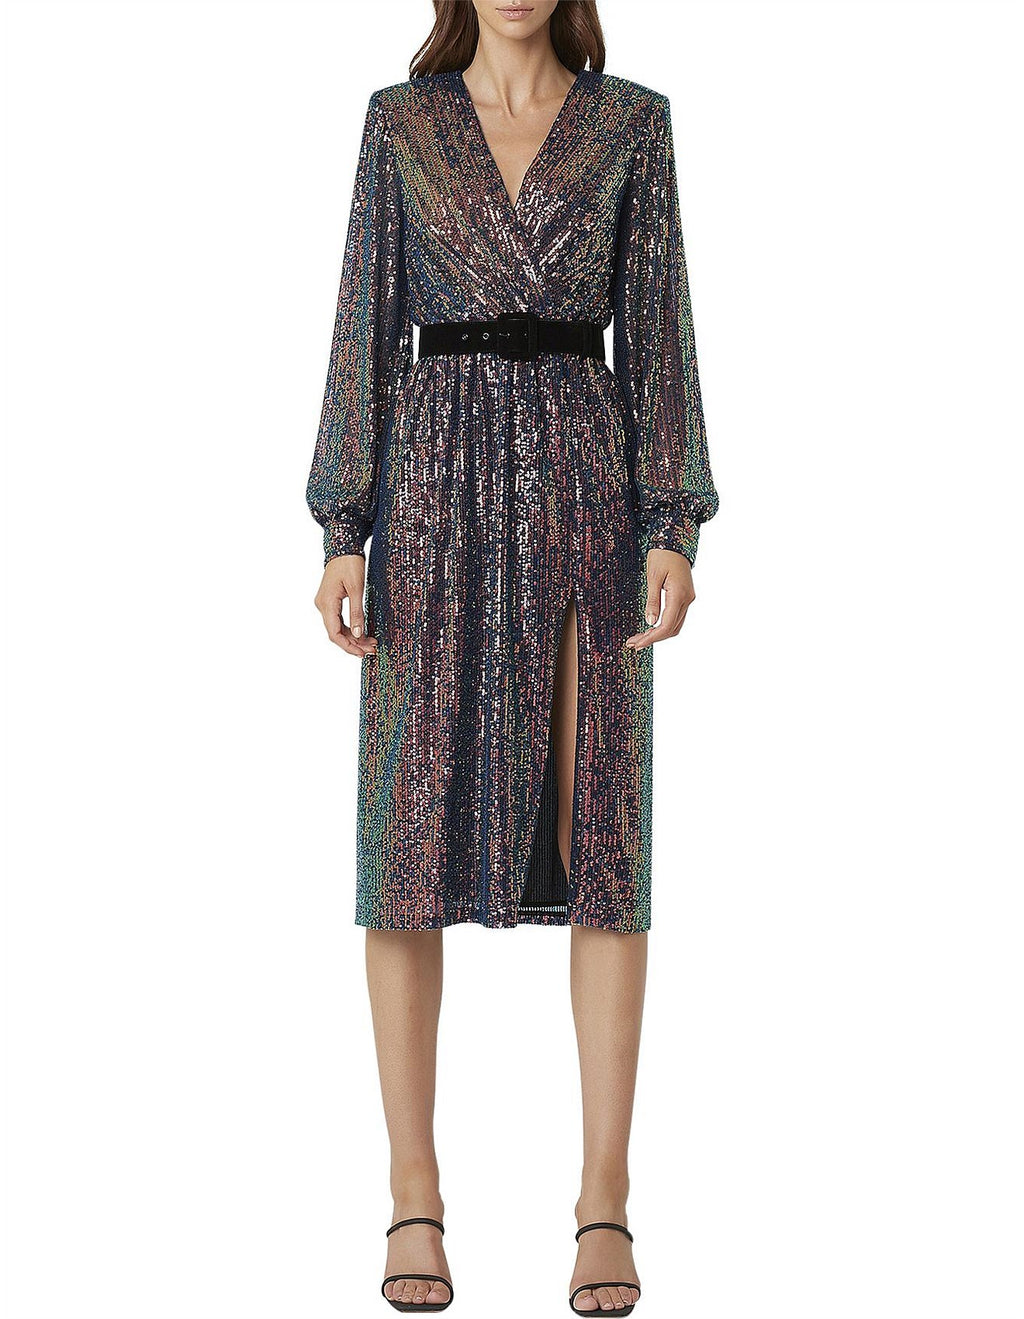 Rebecca Vallance Roxbury Dress in Multi Sequin